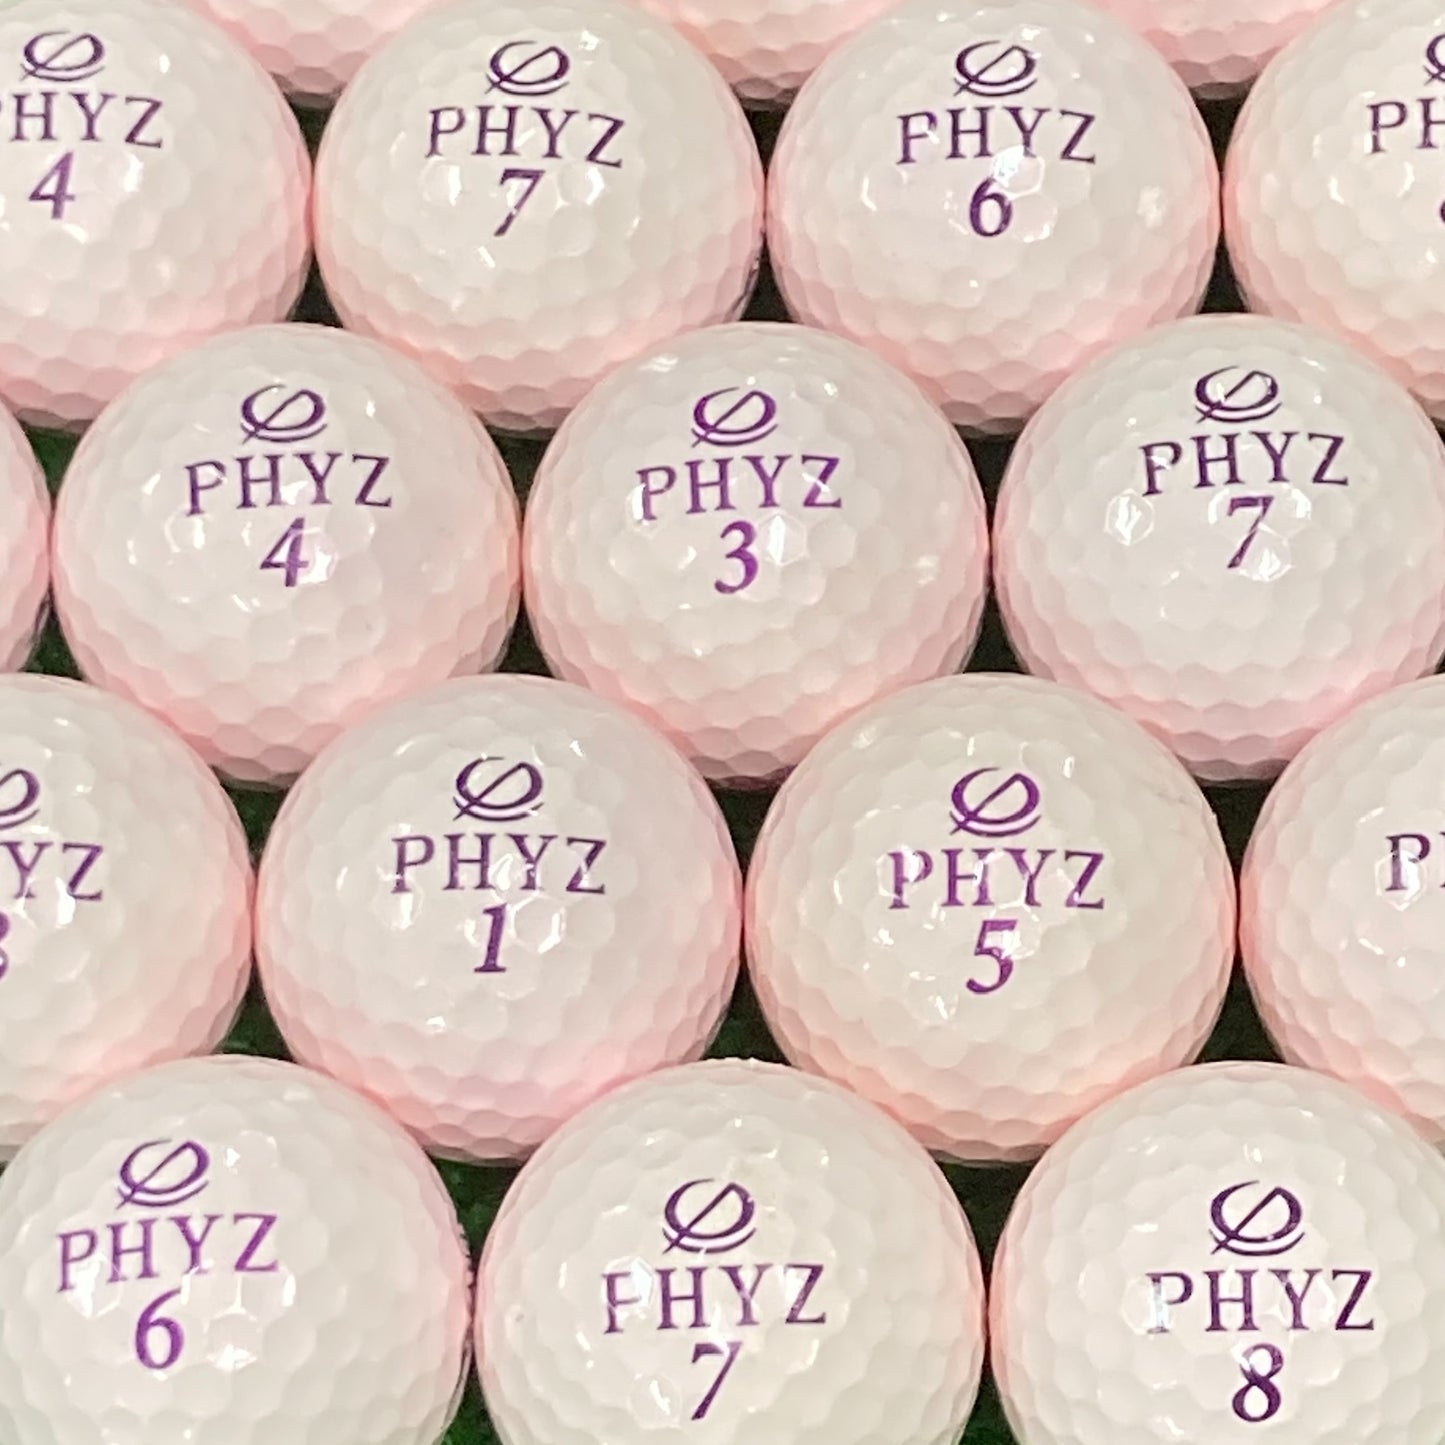 ロストボール ブリヂストン BRIDGESTONE PHYZ 2019年 パールピンク 12球 【Aランク】 ゴルフボール 【中古】